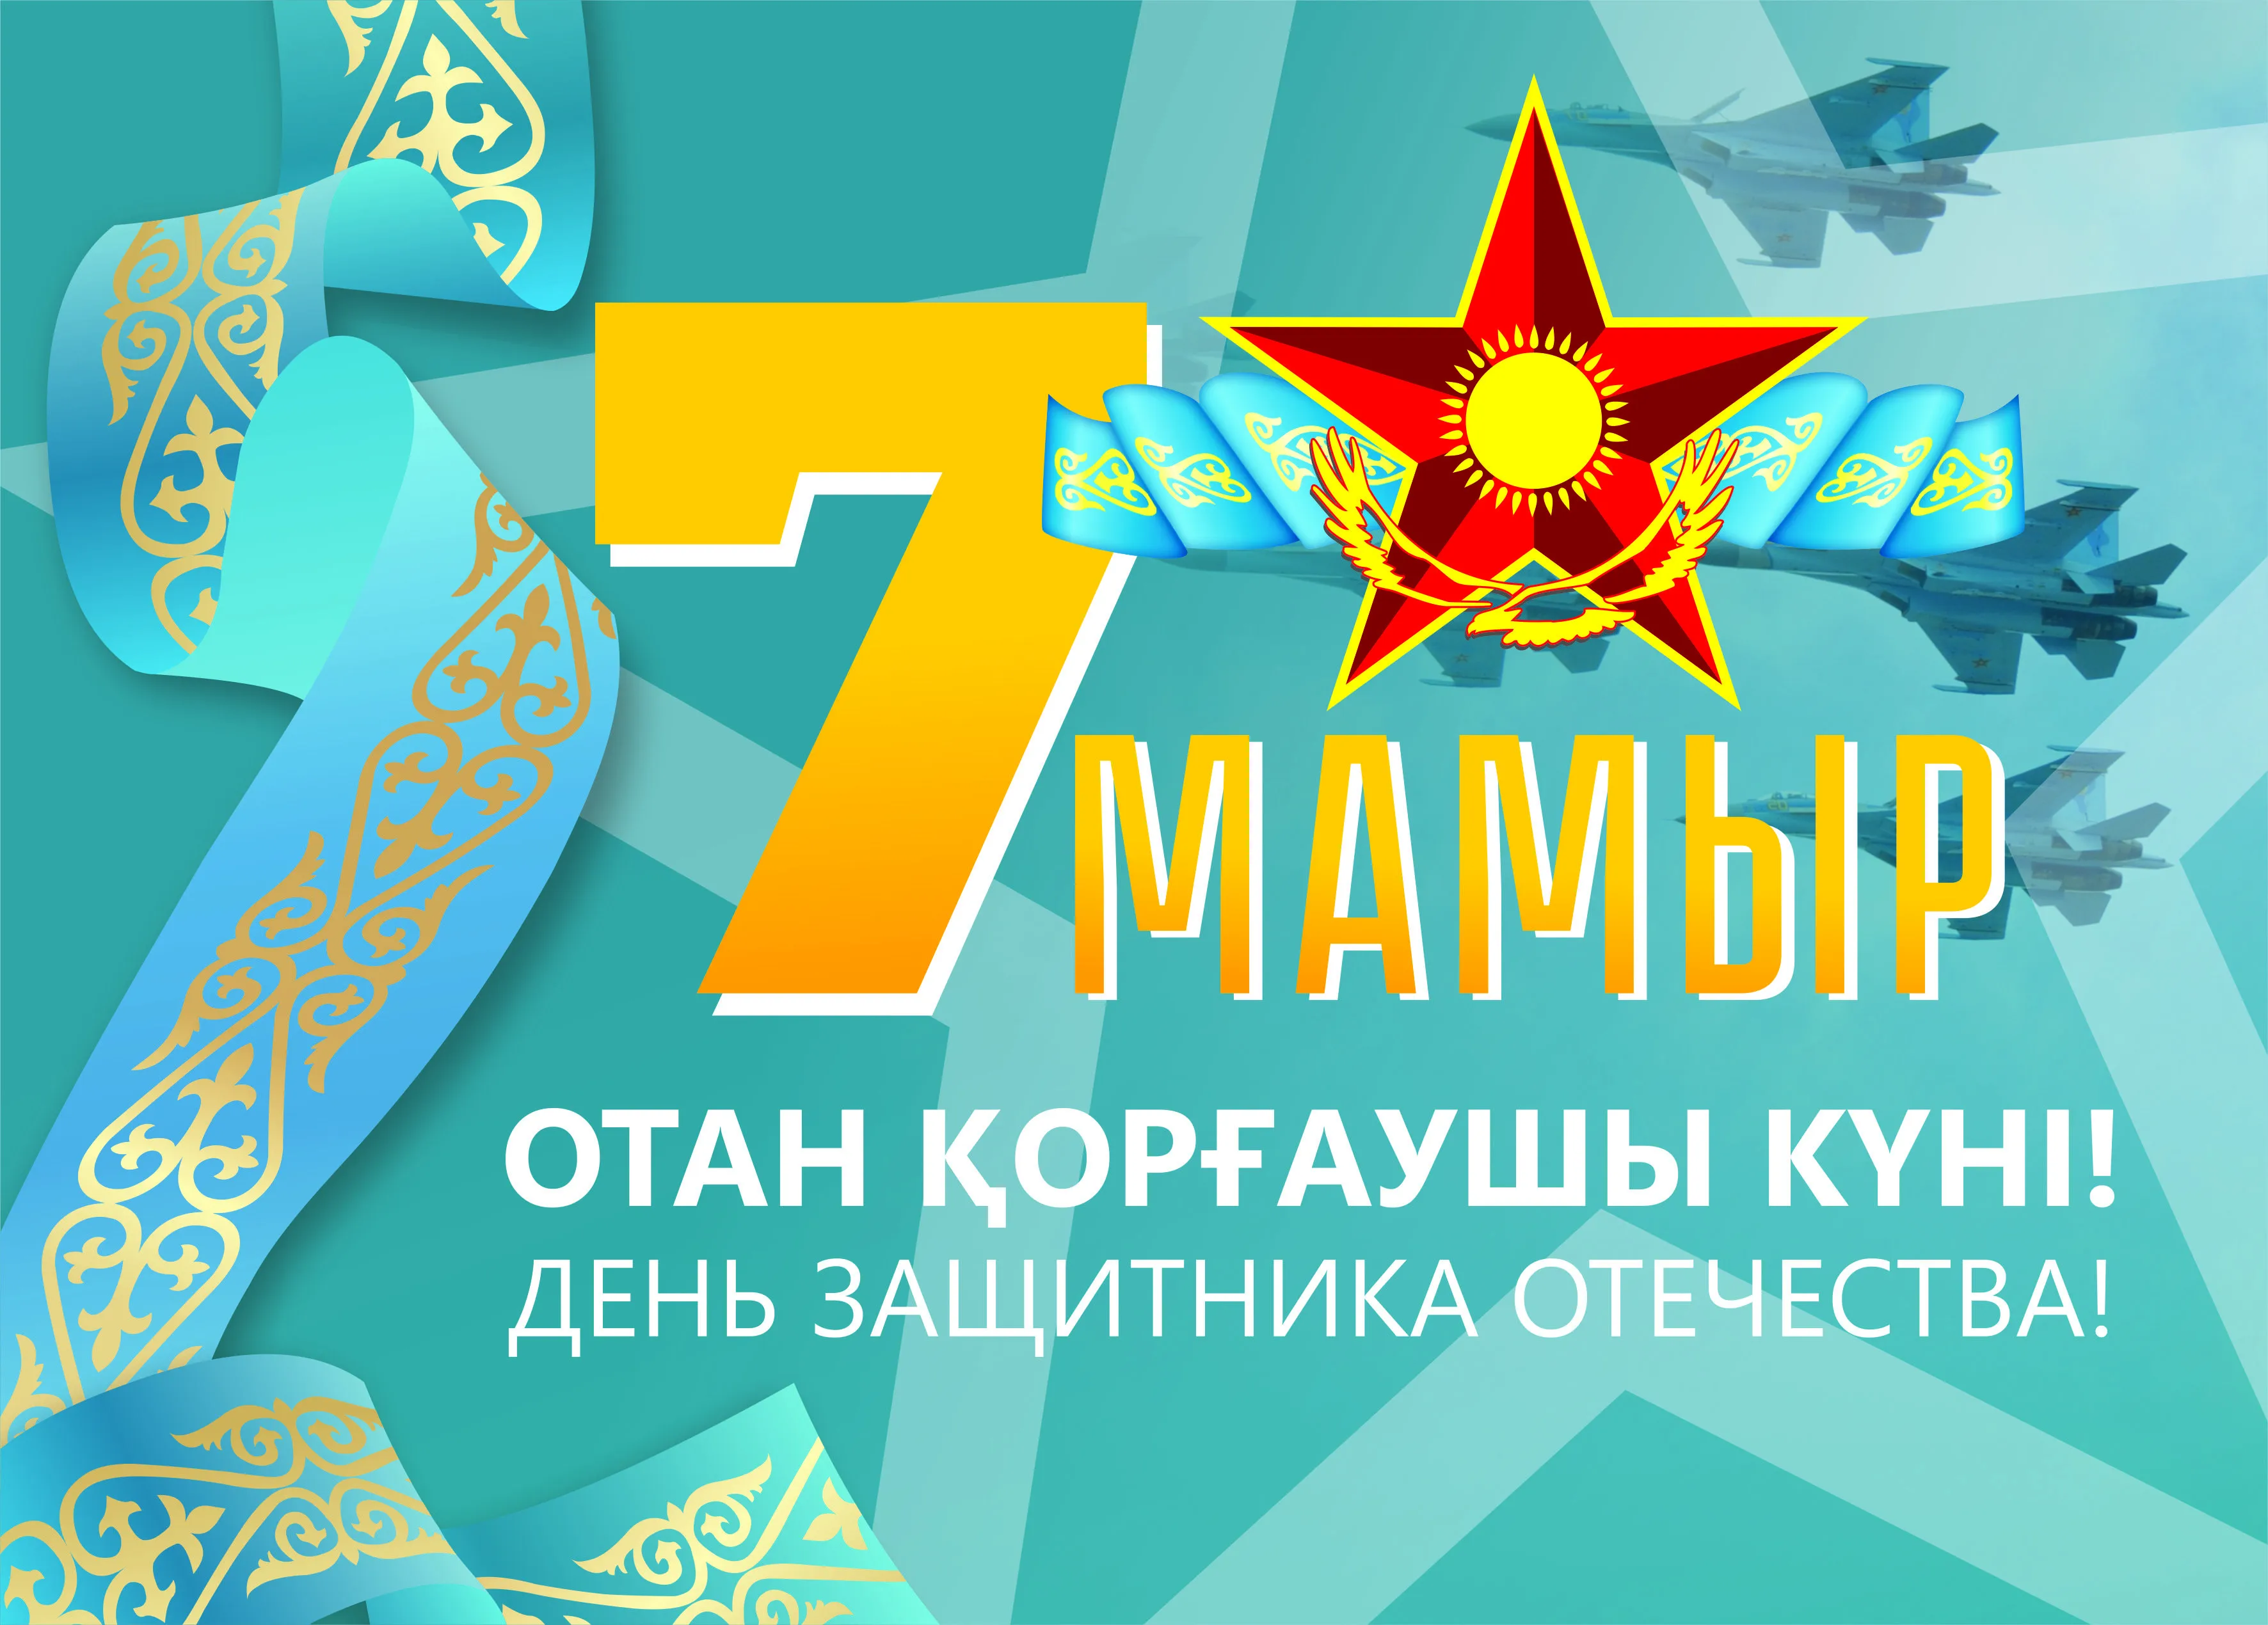 7 мая день защитника отечества. День защитника Отечества Казахстан. 7 Мамыр. 7 Мая открытка.